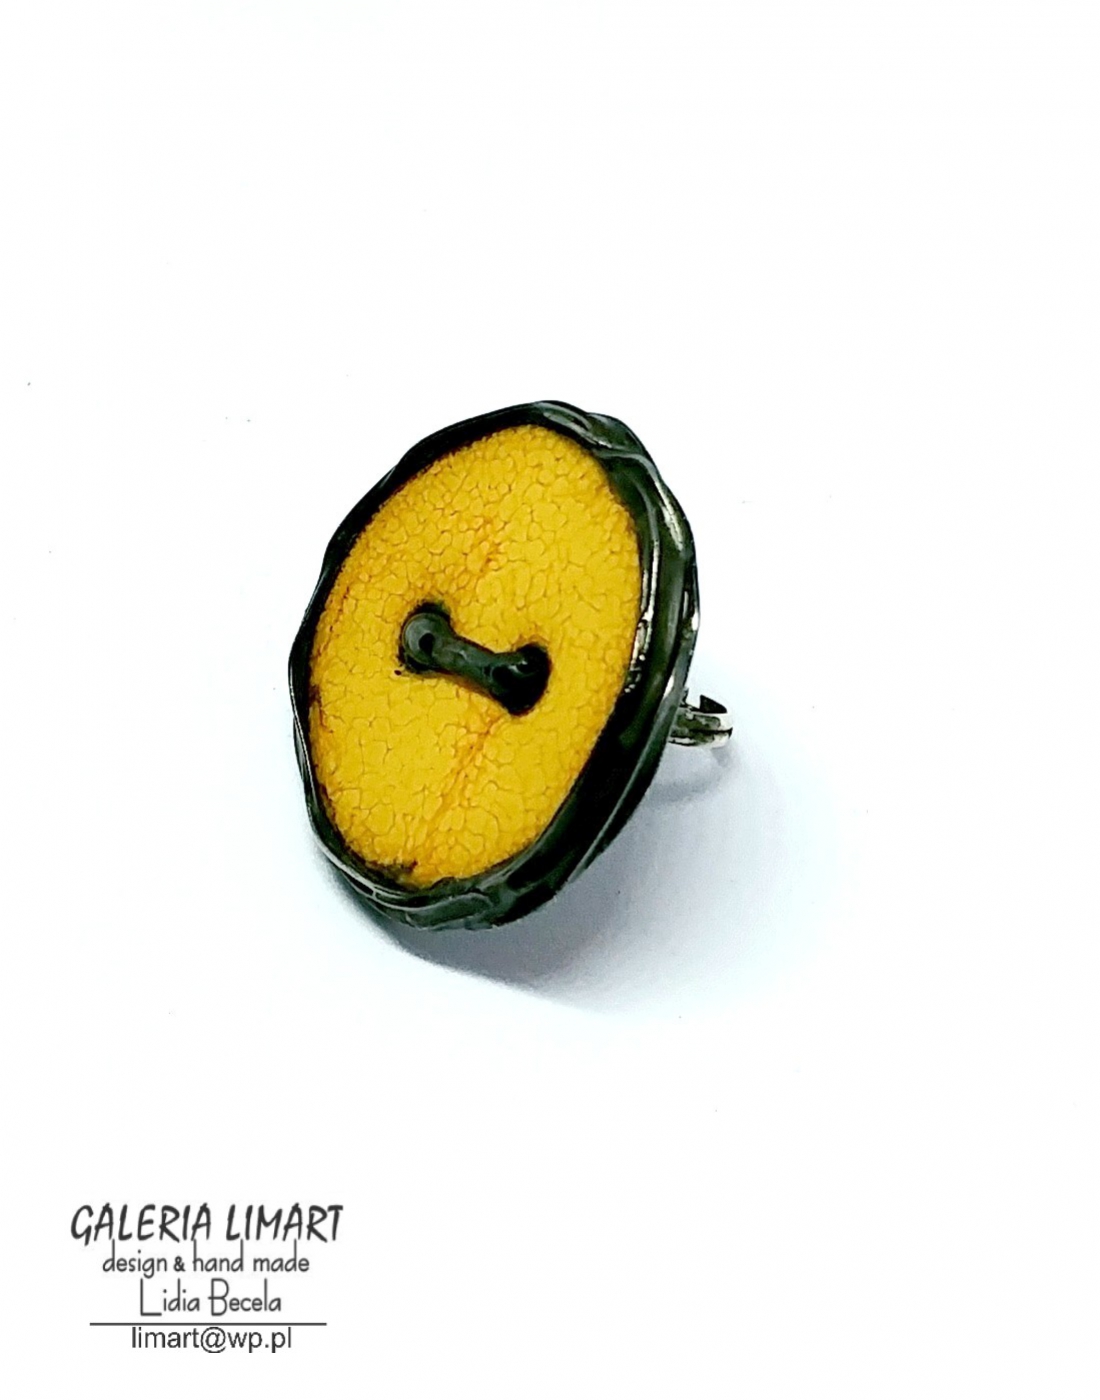 pierścień stworzony z ręcznie wypalanego ceramicznego guzika w ciepło-żółto-złotawym ubarwieniu